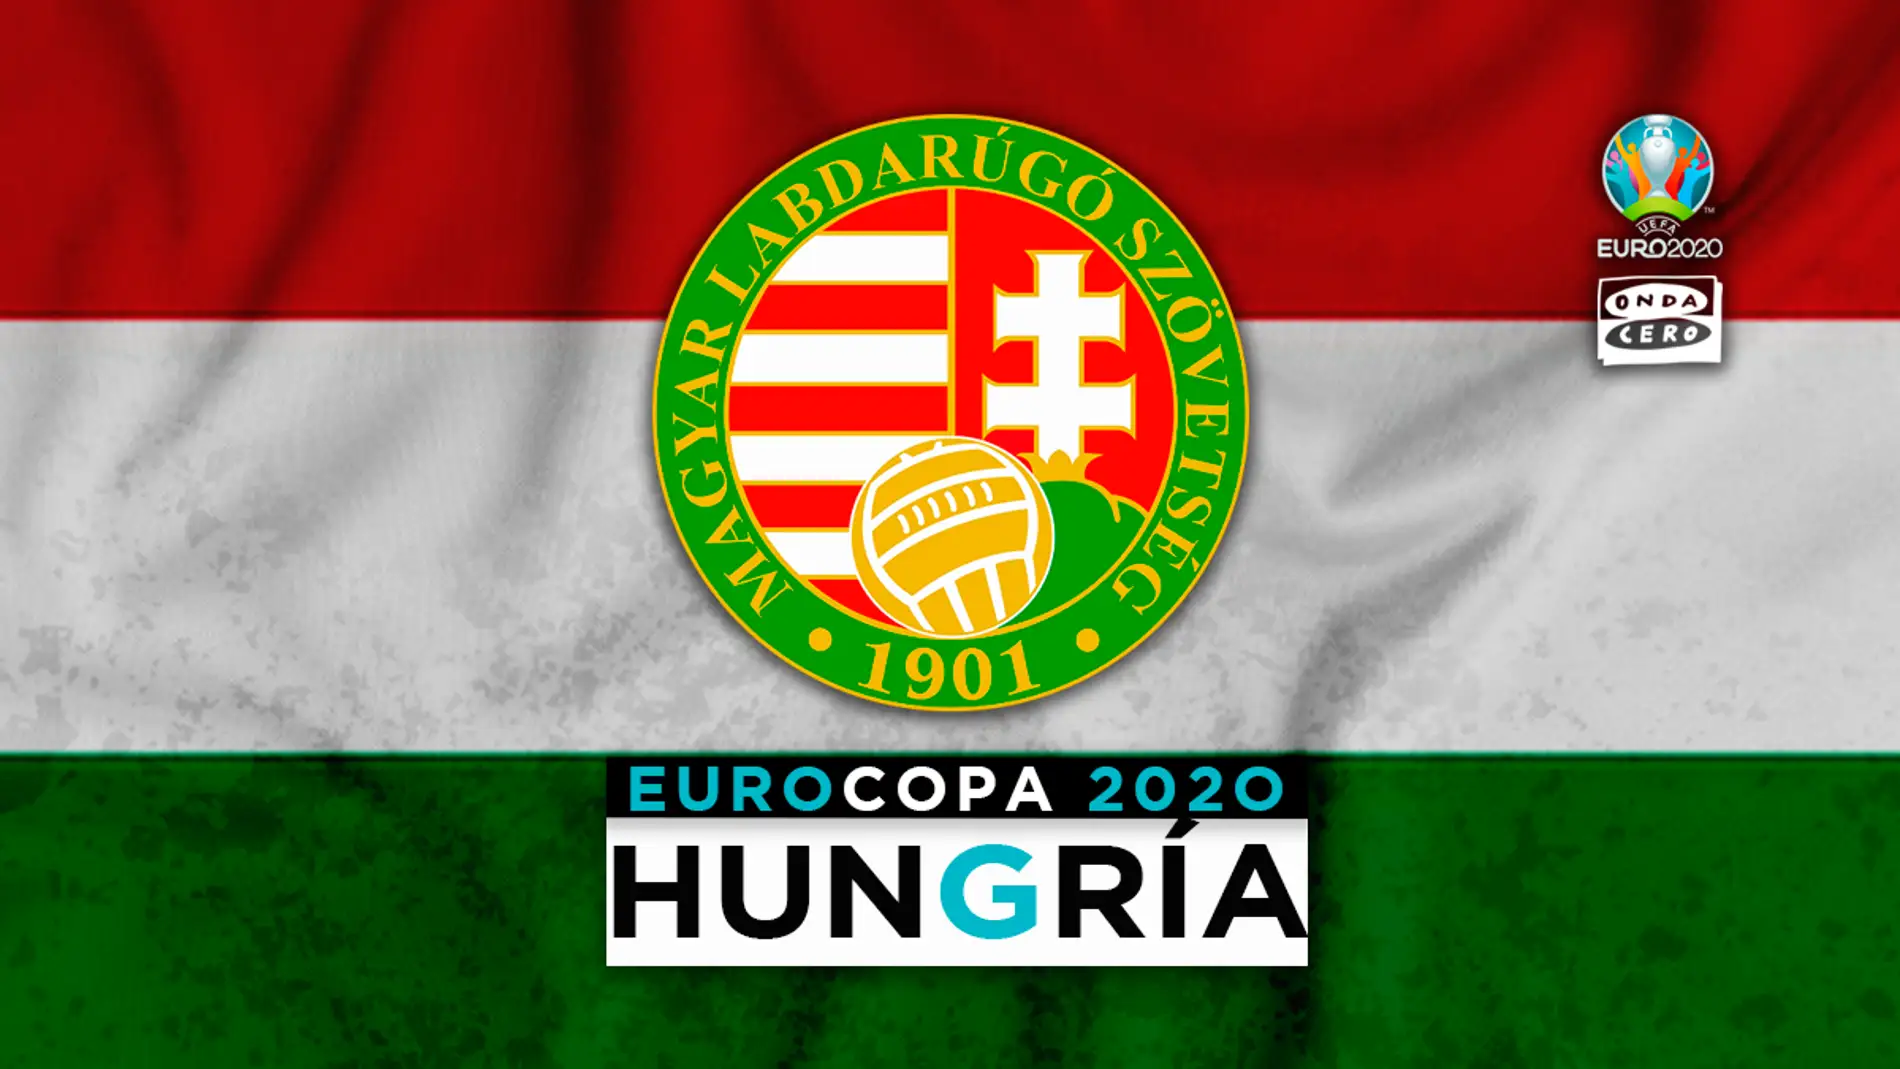 Hungría en la Eurocopa: alineación probable, convocatoria y lista completa de jugadores